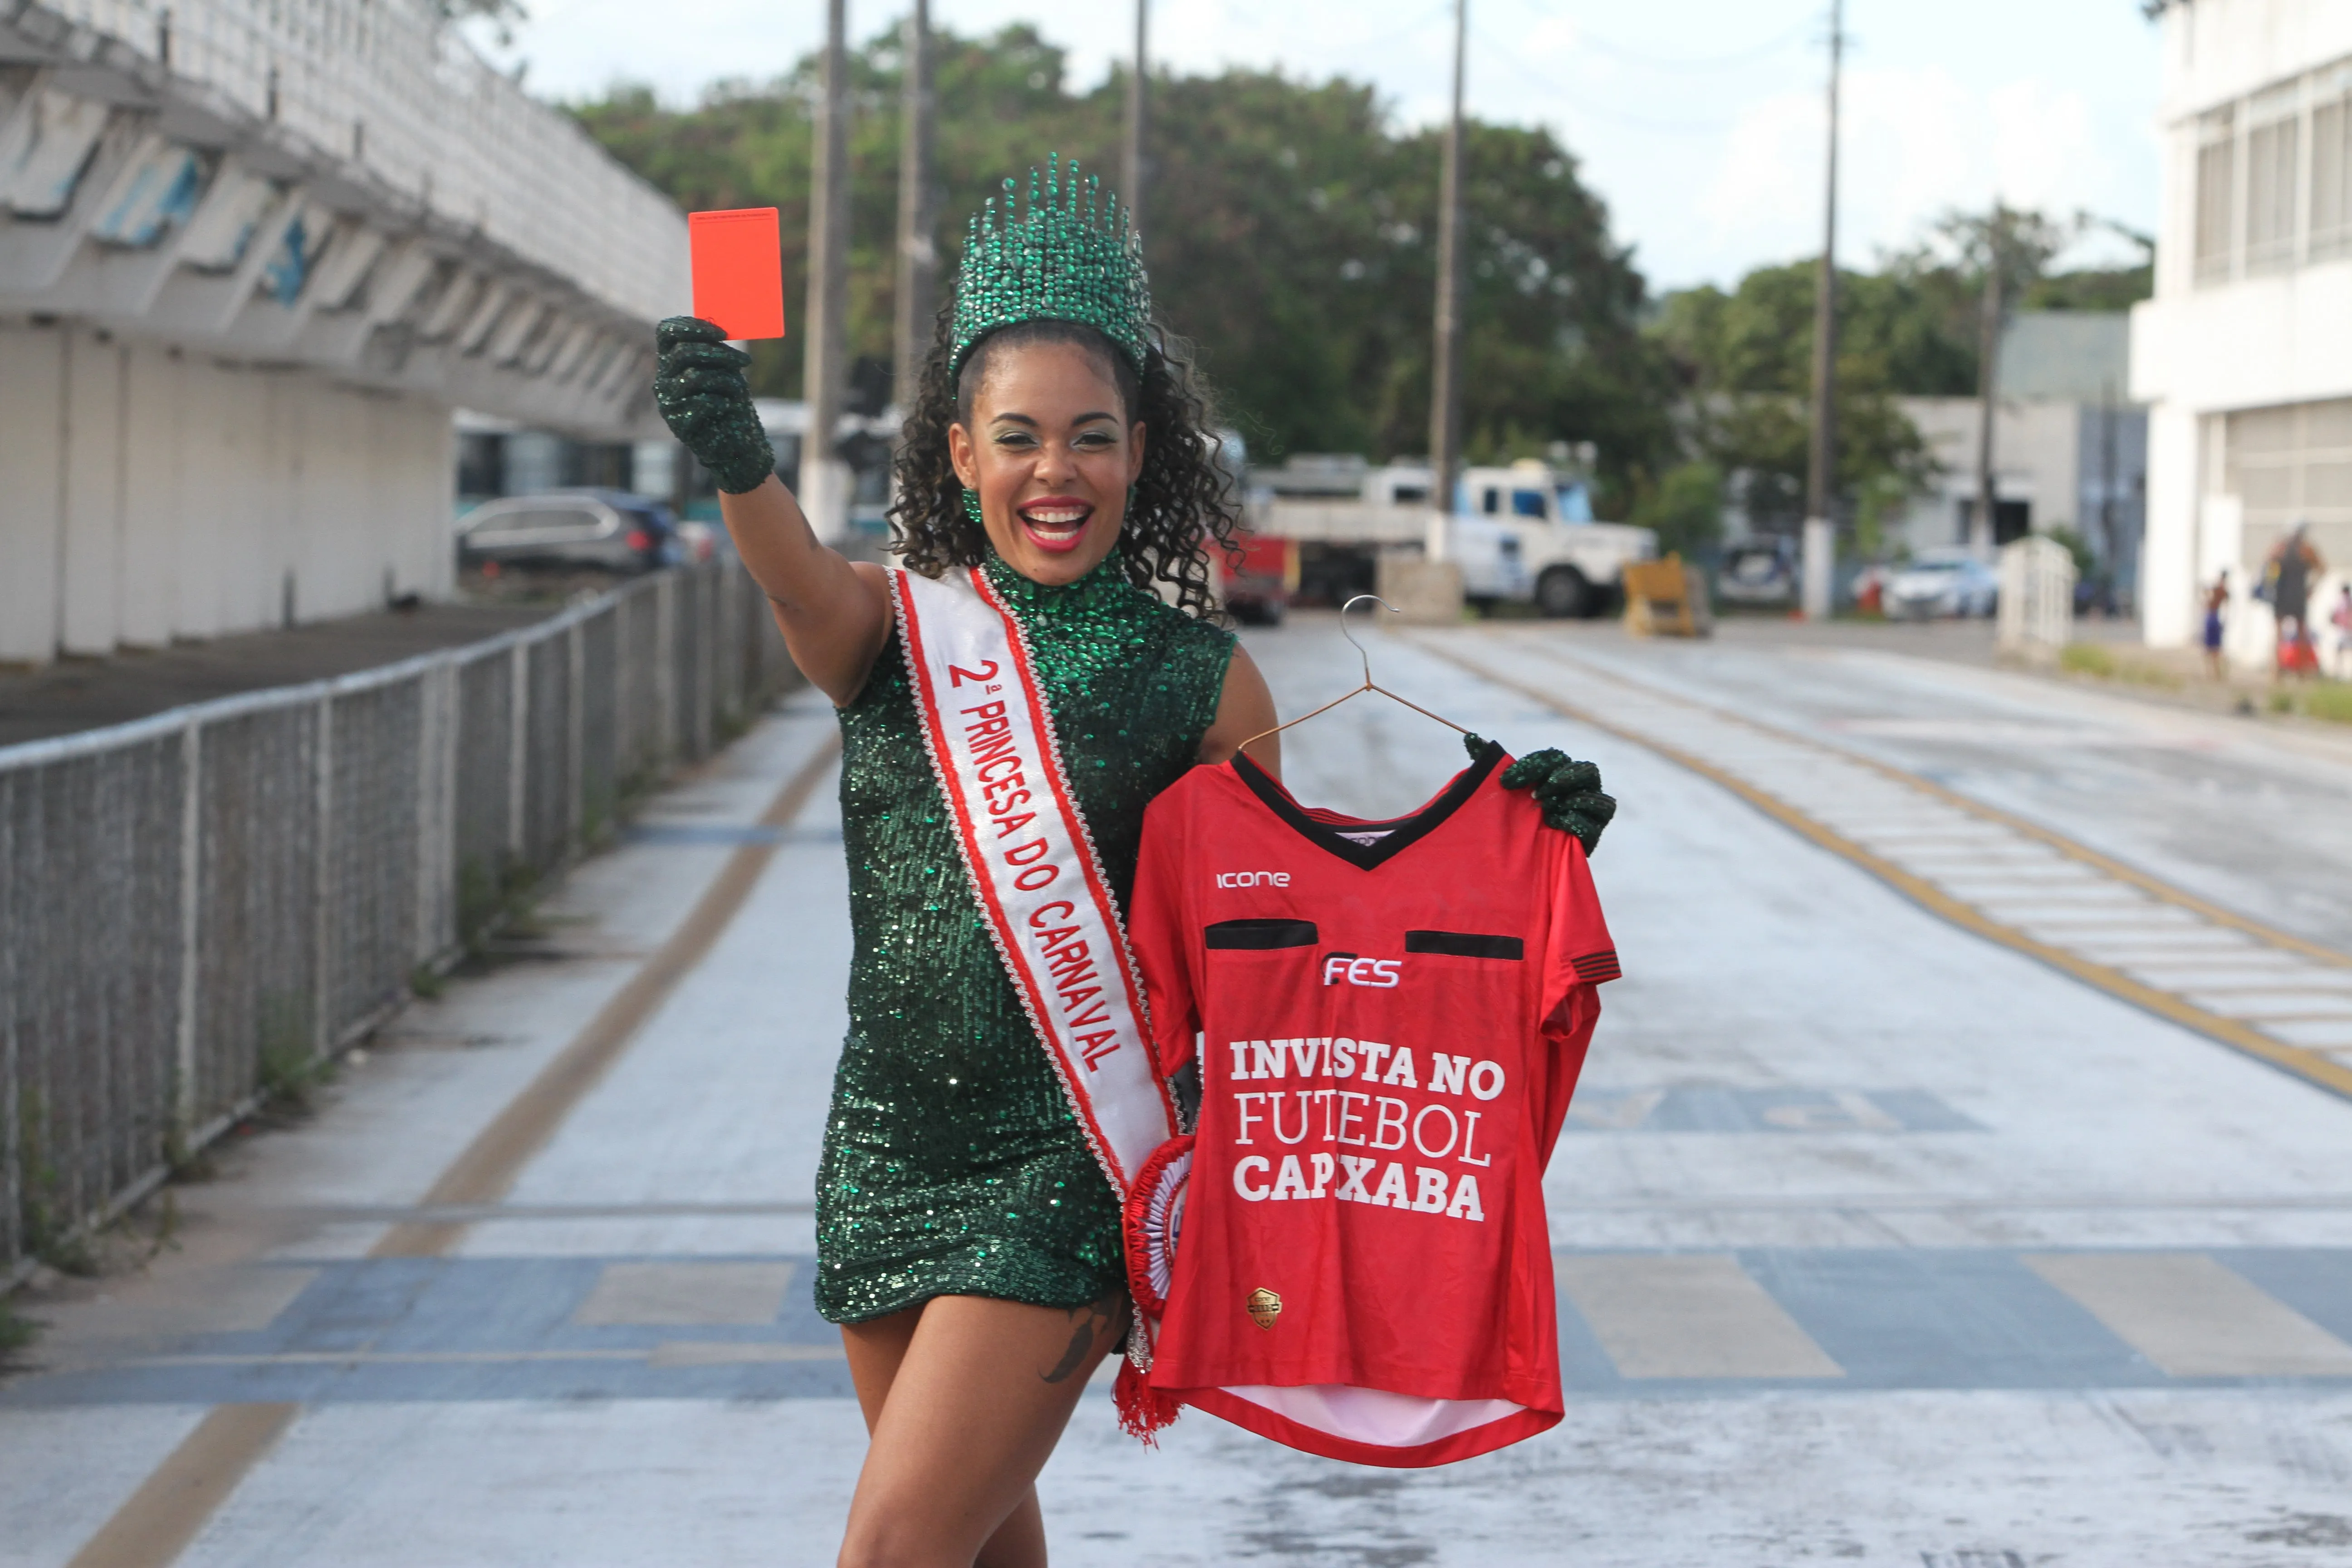 Gabrielle Farias concilia o amor pela farda, Carnaval e futebol: “Tenho um só coração, mas cabe tudo isso”